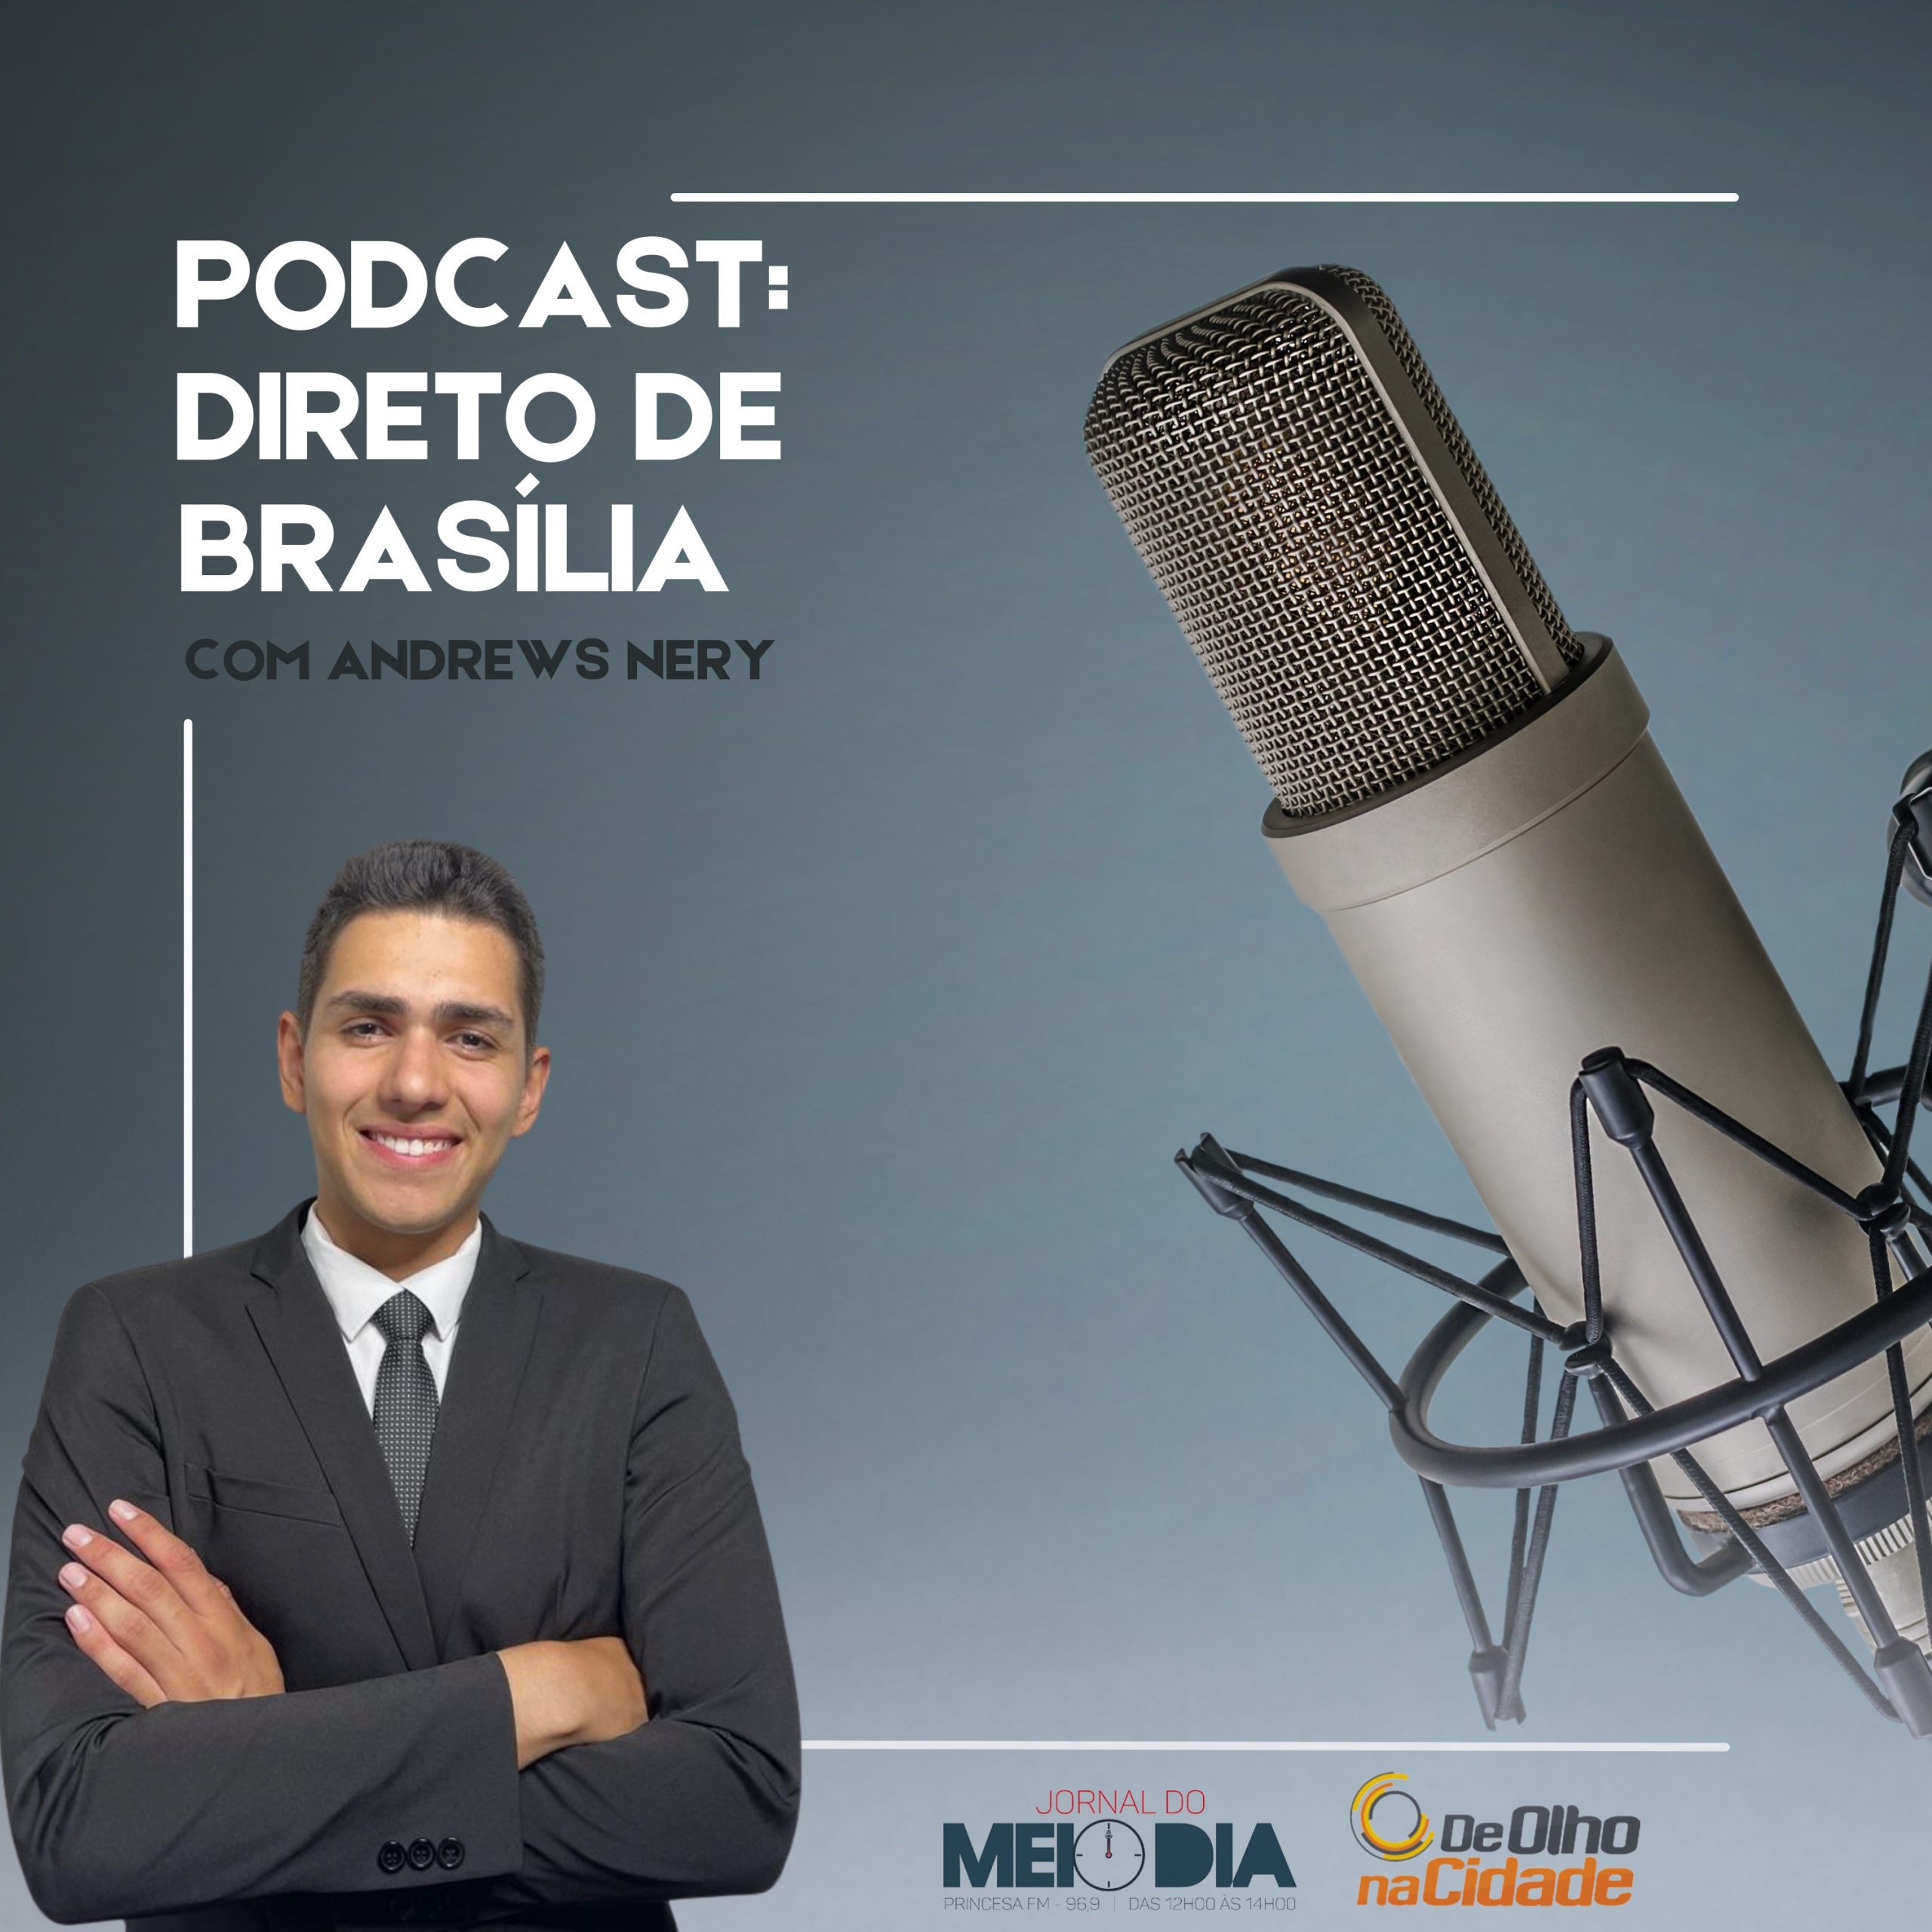 Podcast: Direto de Brasília com Andrews Nery (28) 